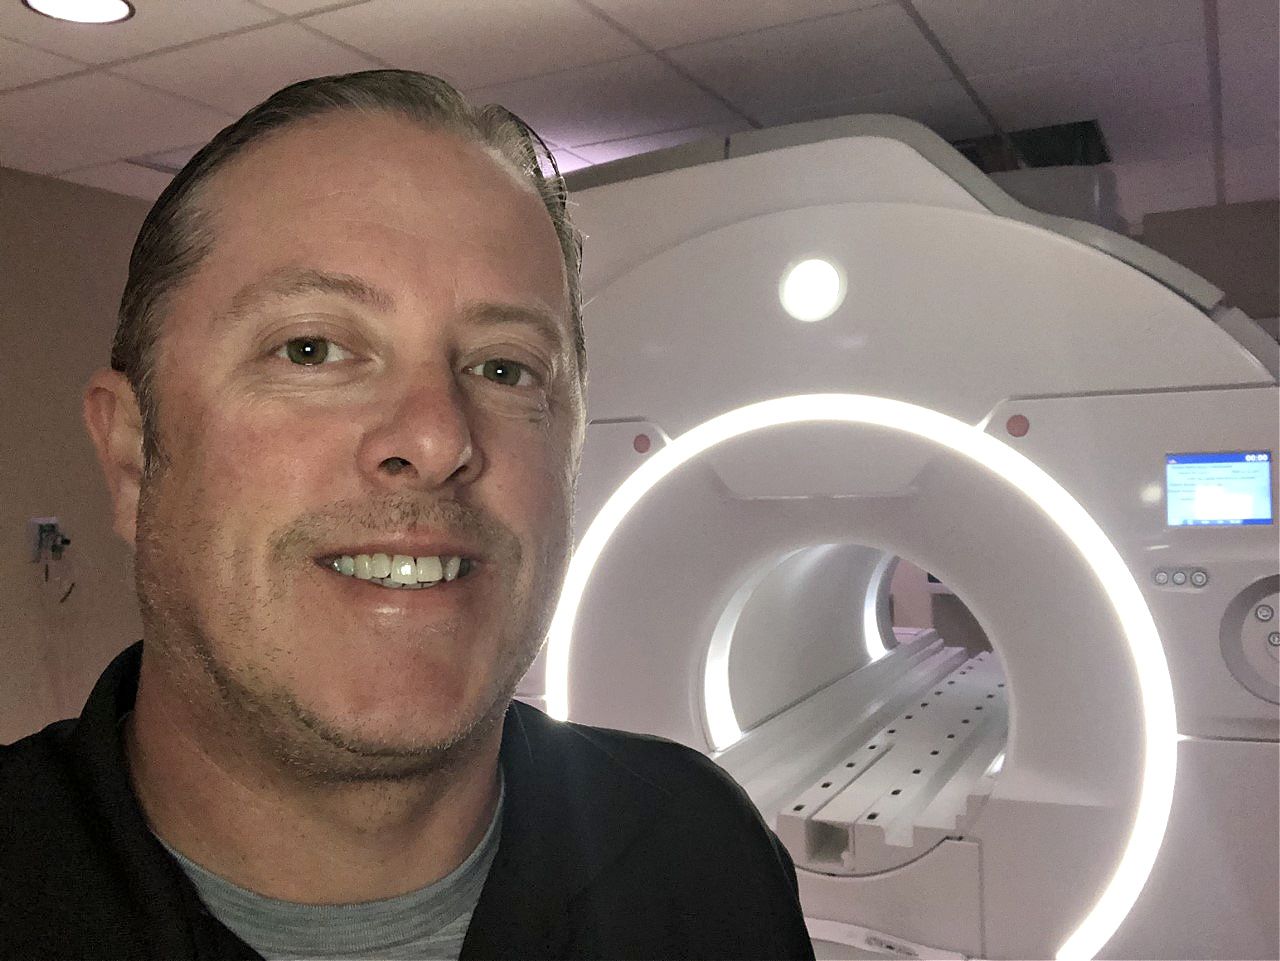 Joe Seibert, MRI technician, stands in front of an MRI machine